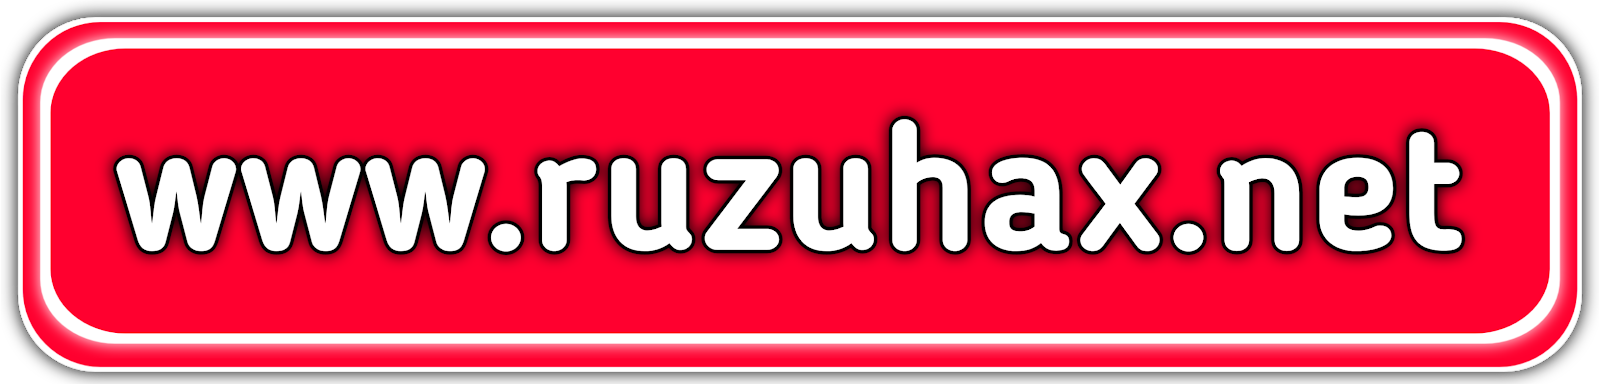 www.ruzuhax.net